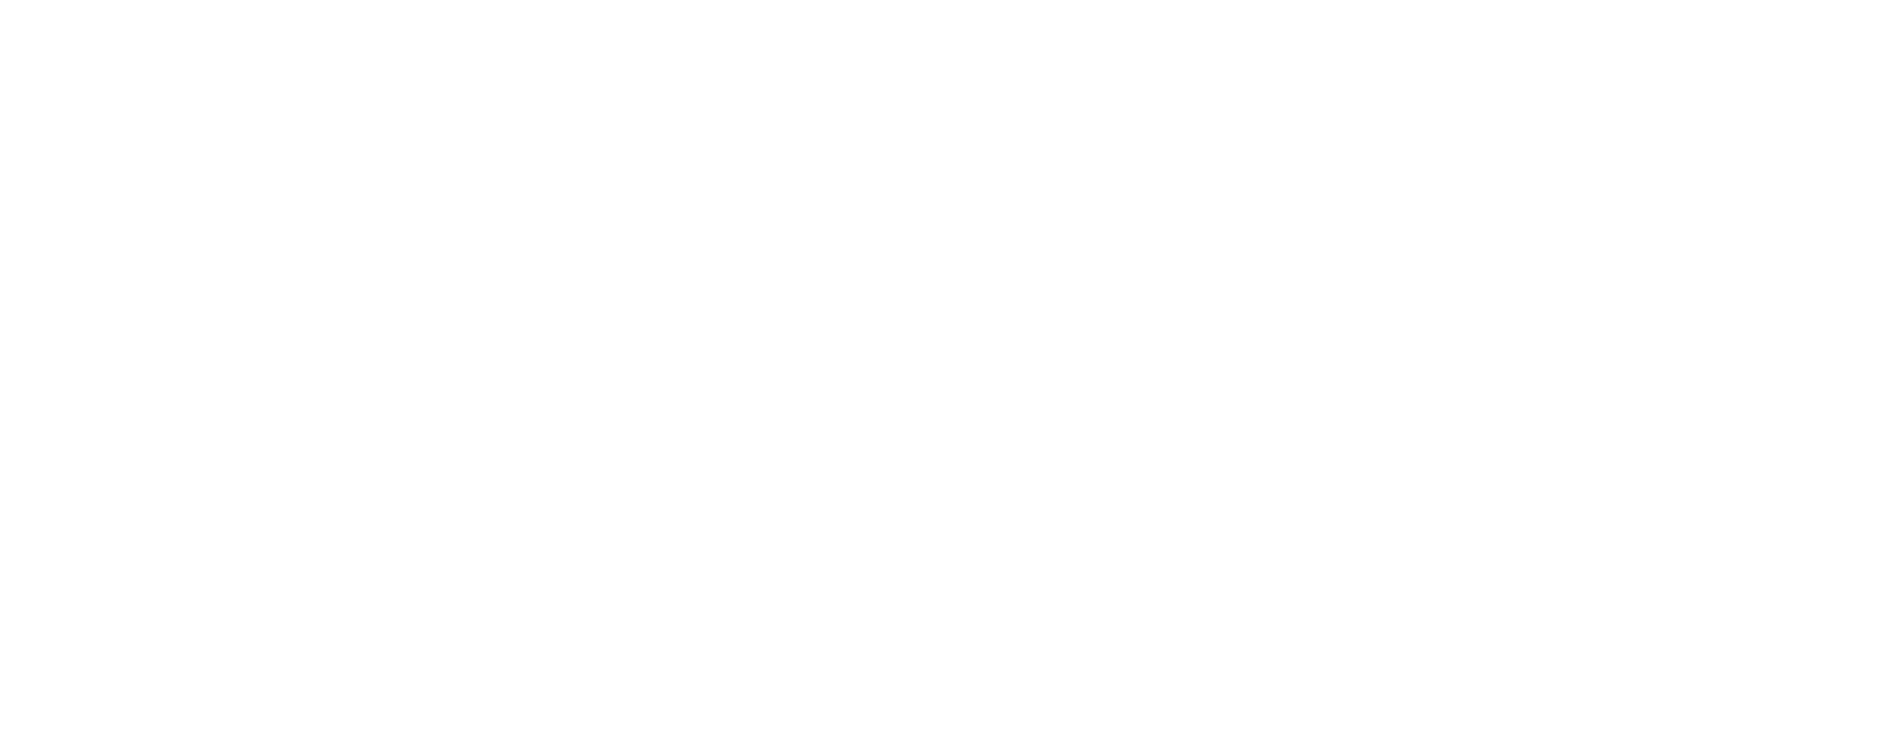 Support Cambridge